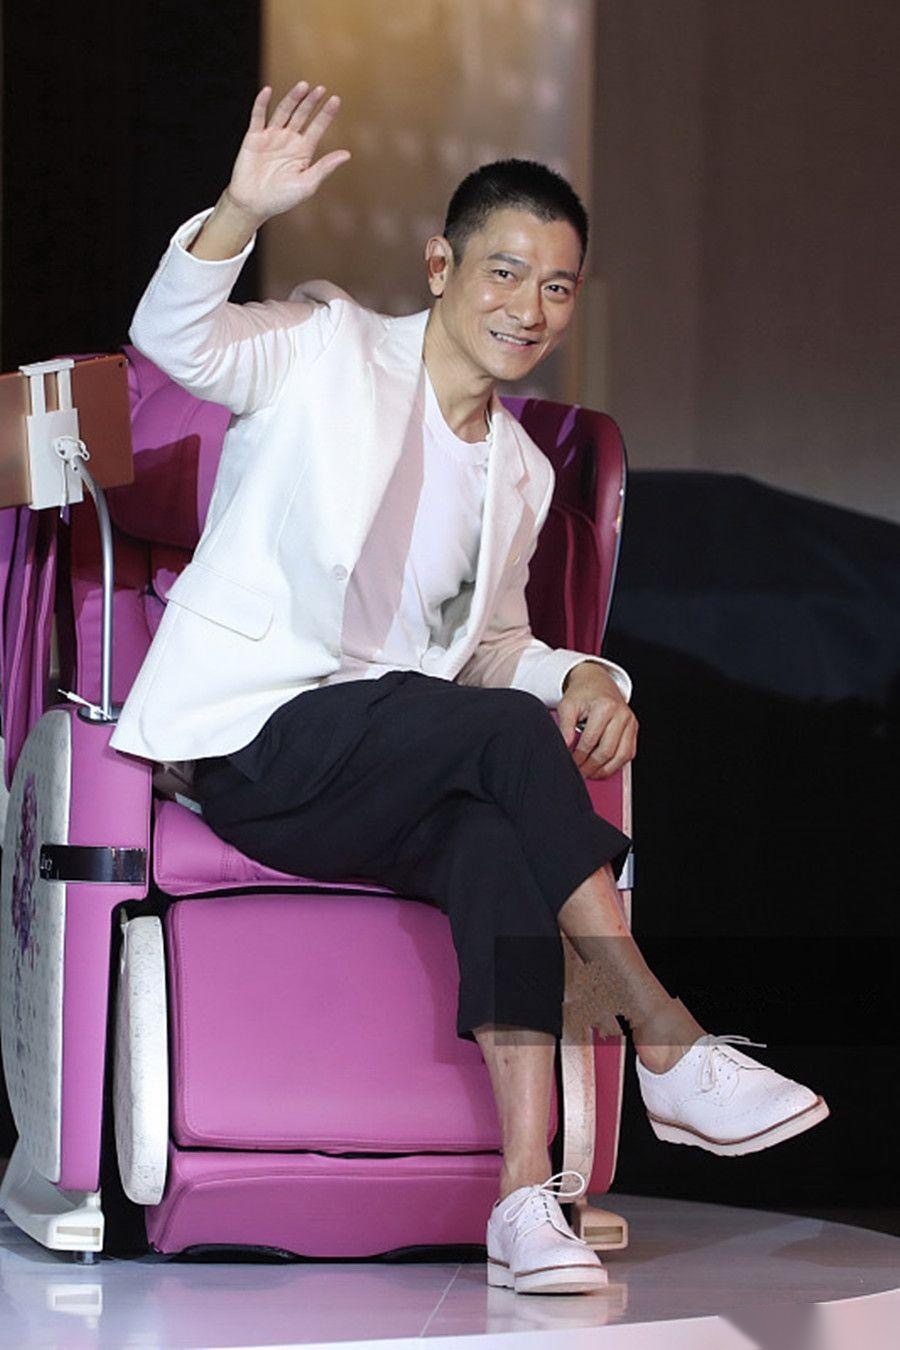 2019年4月2日,刘德华现身上海参加按摩椅代言活动,当天他身穿白色西装